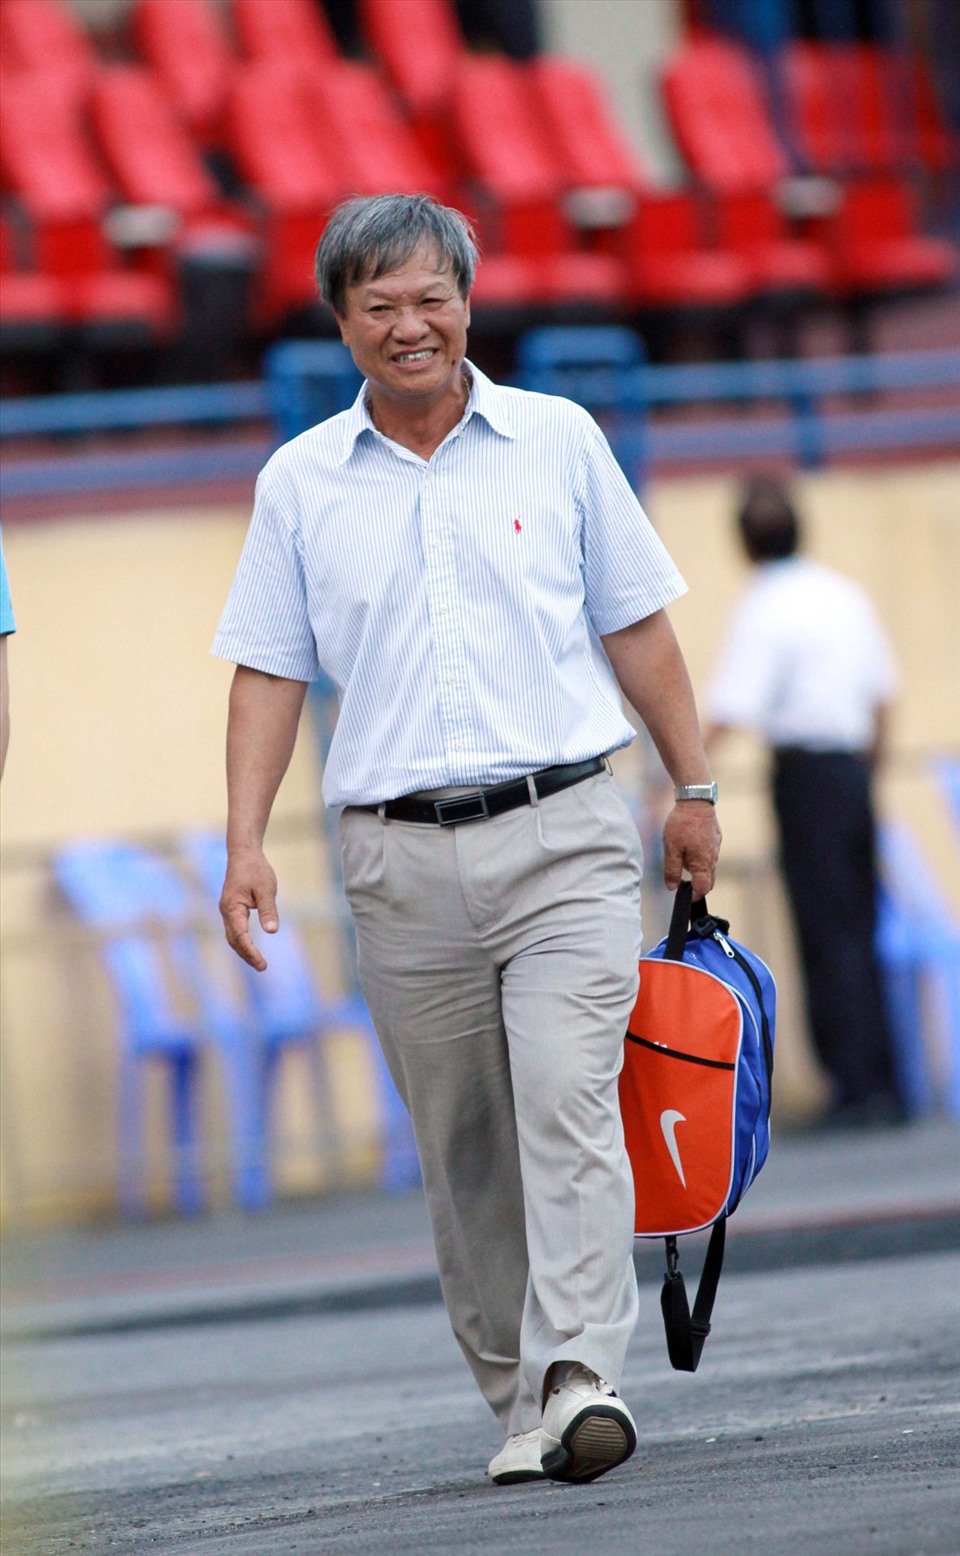 Năm 2018, người hâm mộ bóng đá Việt Nam đã bất ngờ khi biết tin huấn luyện viên Lê Thụy Hải phát hiện mắc bệnh ung thư tuyến tuỵ. Sau thời gian dài chiến đấu với bệnh hiểm nghèo, cựu danh thủ này trút hơi thở cuối cùng vào trưa 7.5.2021.